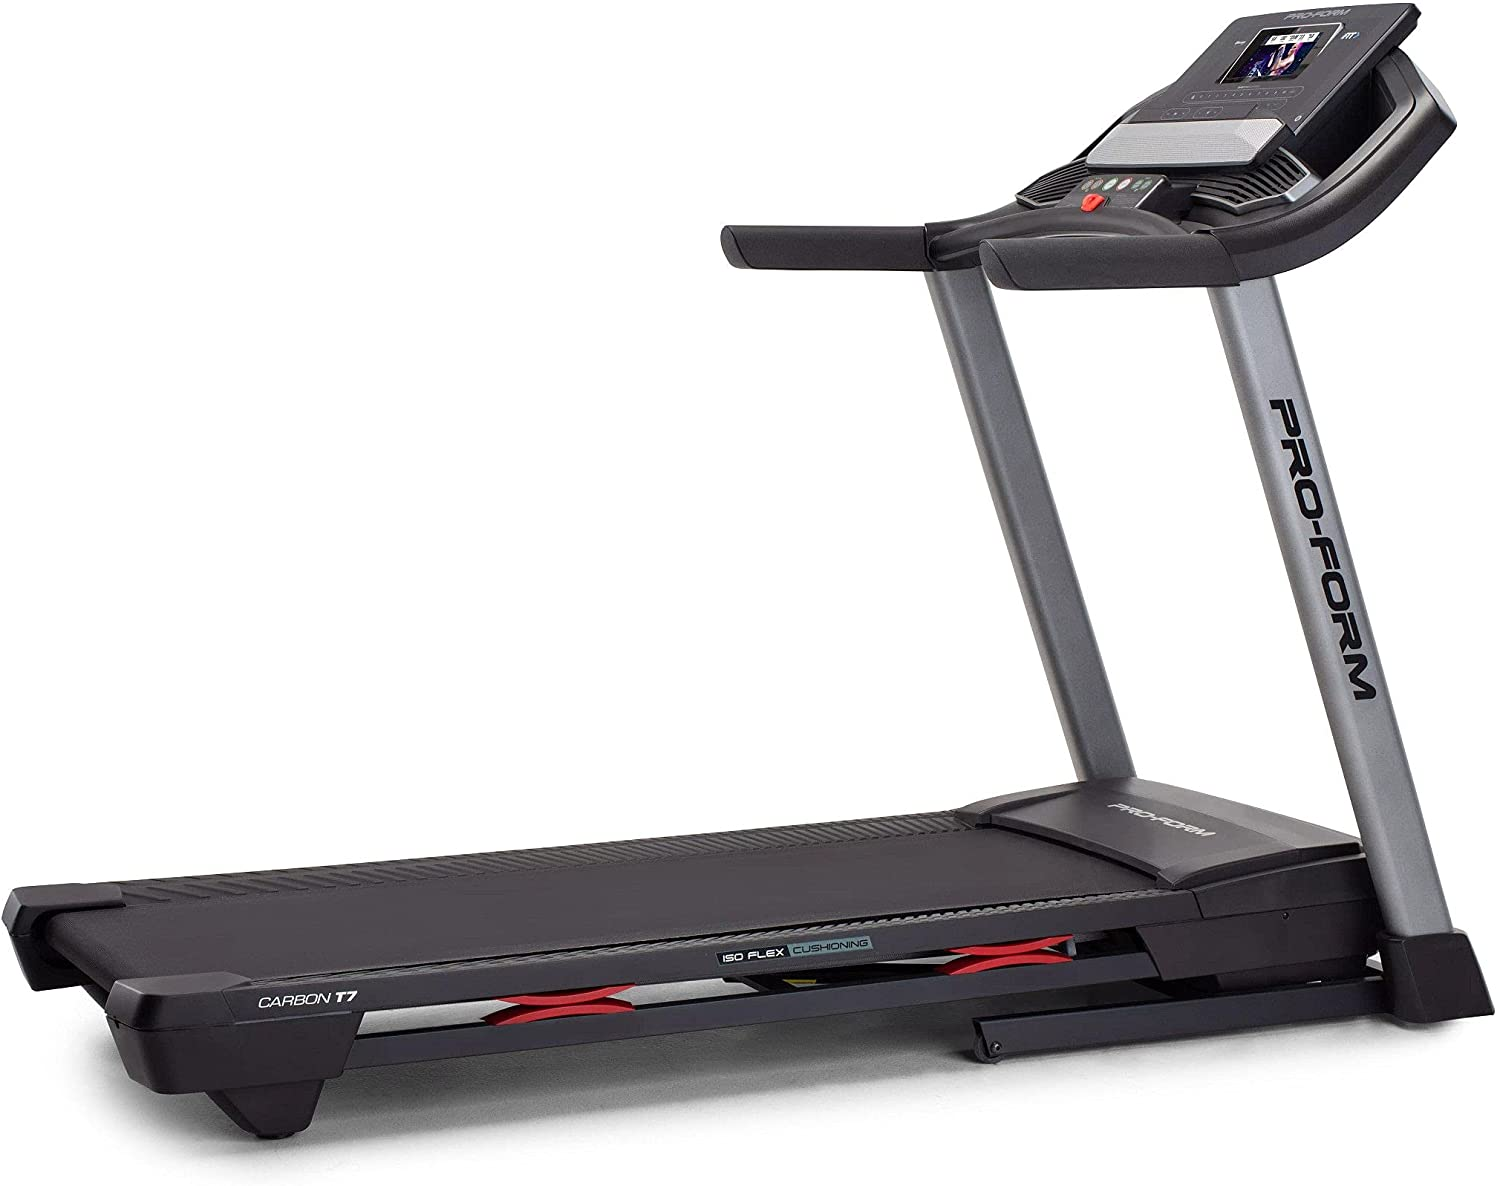 How fast do treadmills go?